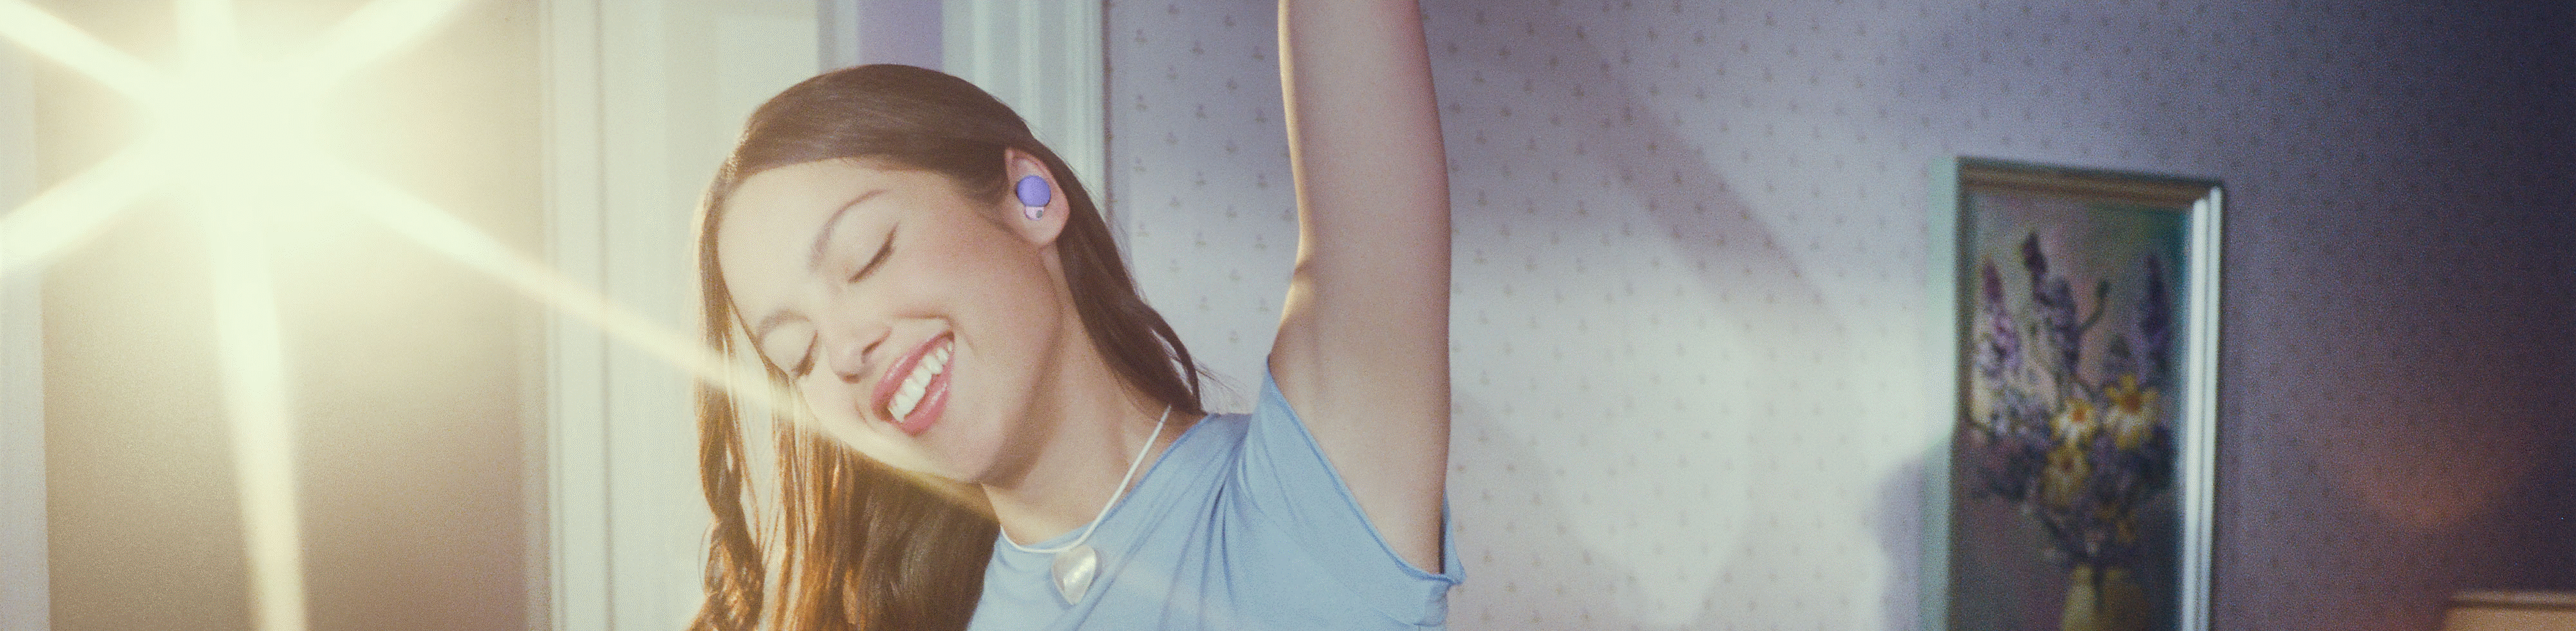 Bild von Olivia, die die Kopfhörer LinkBuds S in Violett trägt und einen Arm über ihren Kopf hebt. Im Hintergrund ist ein helles Licht zu erkennen